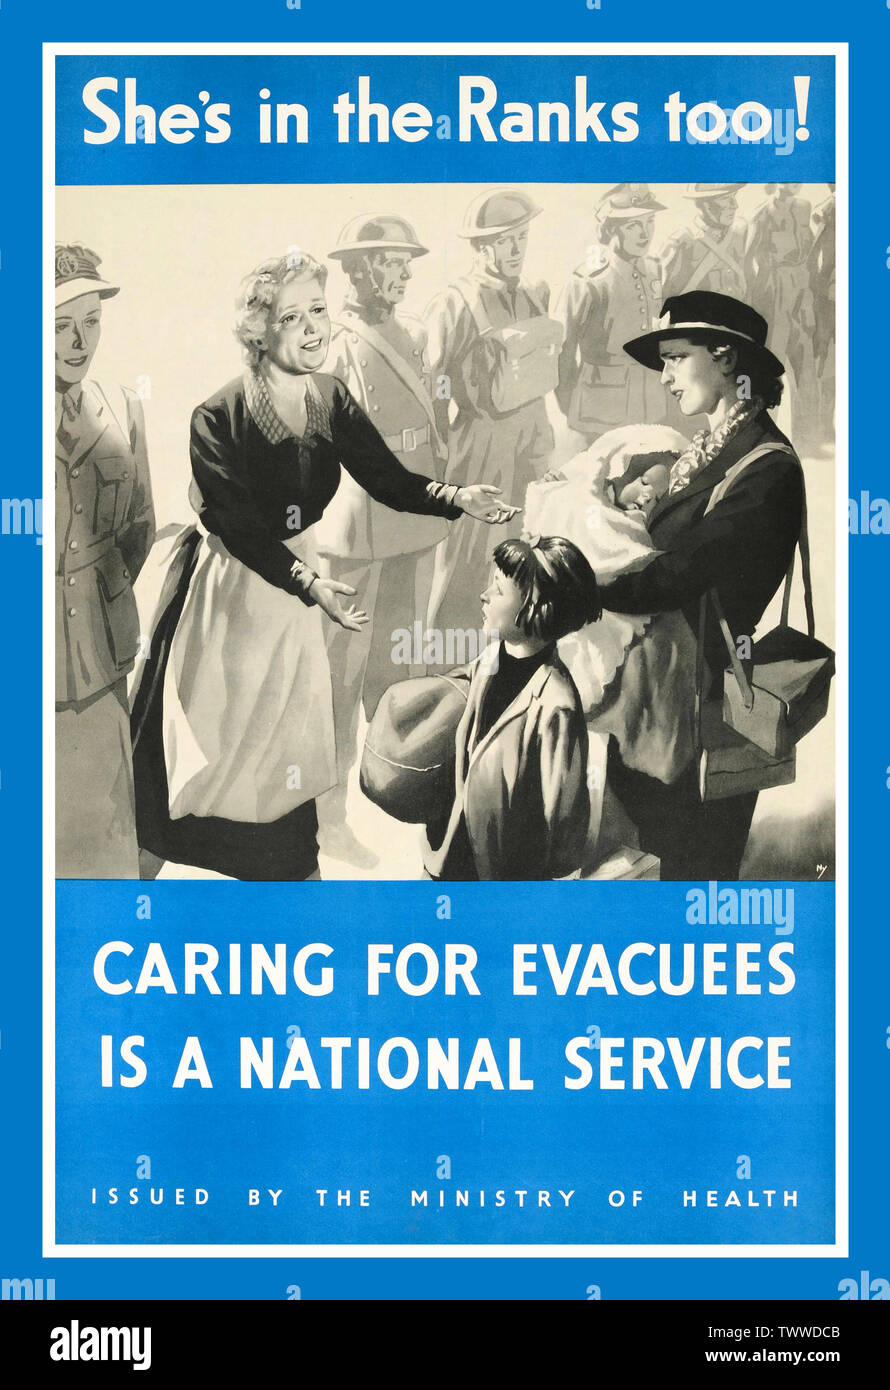 Vintage UK British WW2 Seconde Guerre mondiale affiche de propagande :  "Elle est dans les rangs aussi !" - s'occupe d'évacués est un service  national. Illustration noir et blanc avec une dame